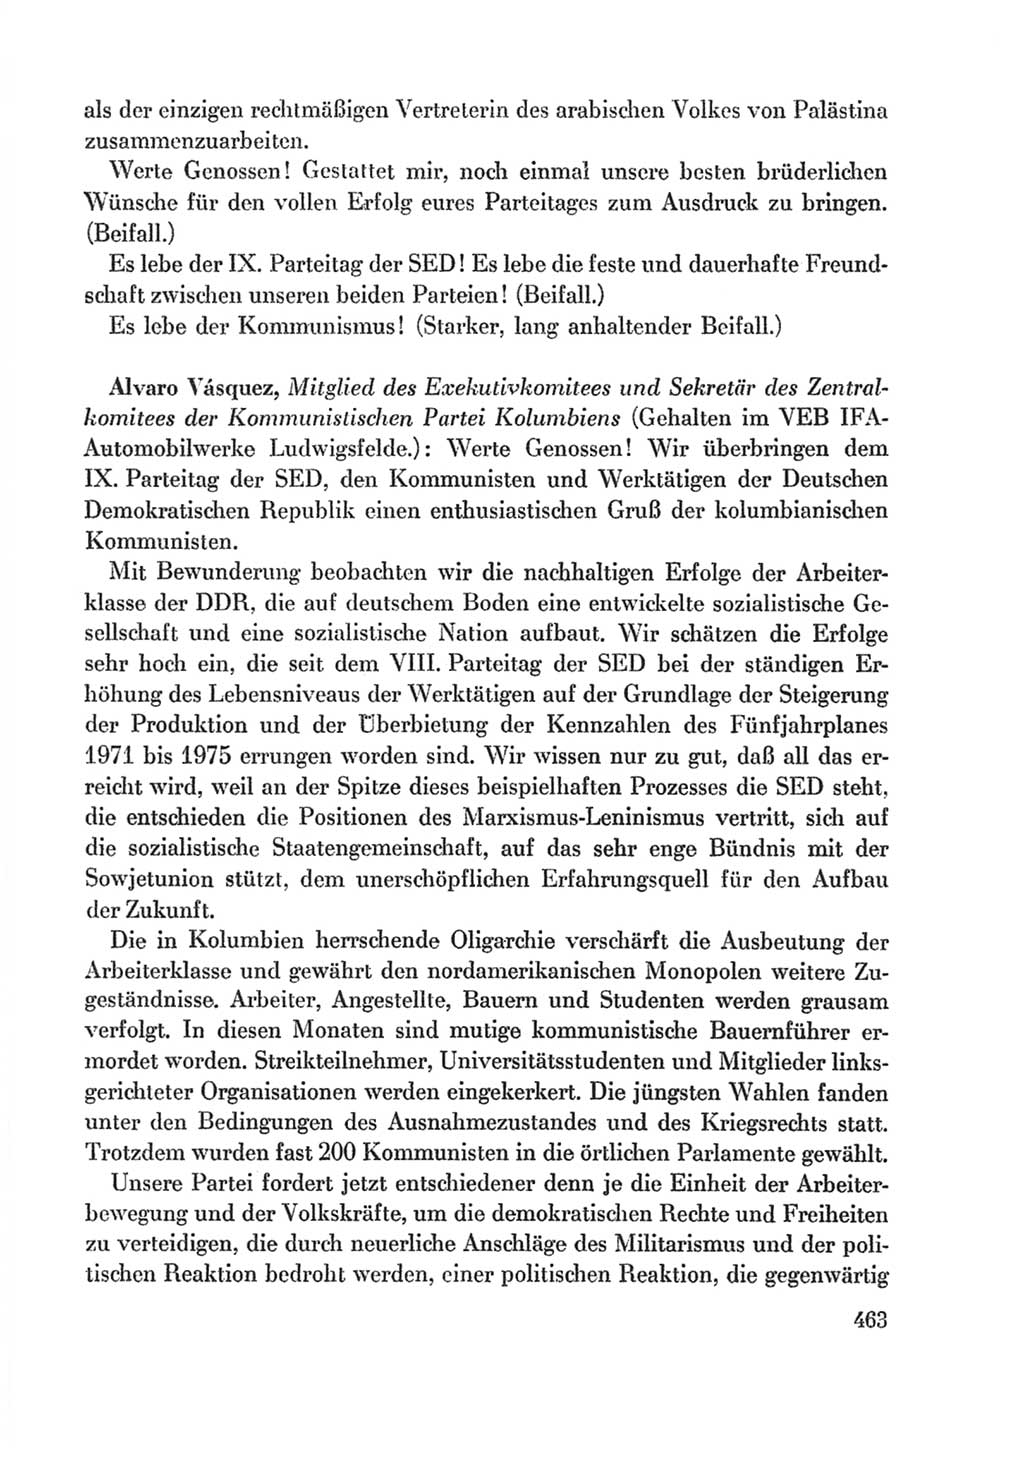 Protokoll der Verhandlungen des Ⅸ. Parteitages der Sozialistischen Einheitspartei Deutschlands (SED) [Deutsche Demokratische Republik (DDR)] 1976, Band 1, Seite 463 (Prot. Verh. Ⅸ. PT SED DDR 1976, Bd. 1, S. 463)